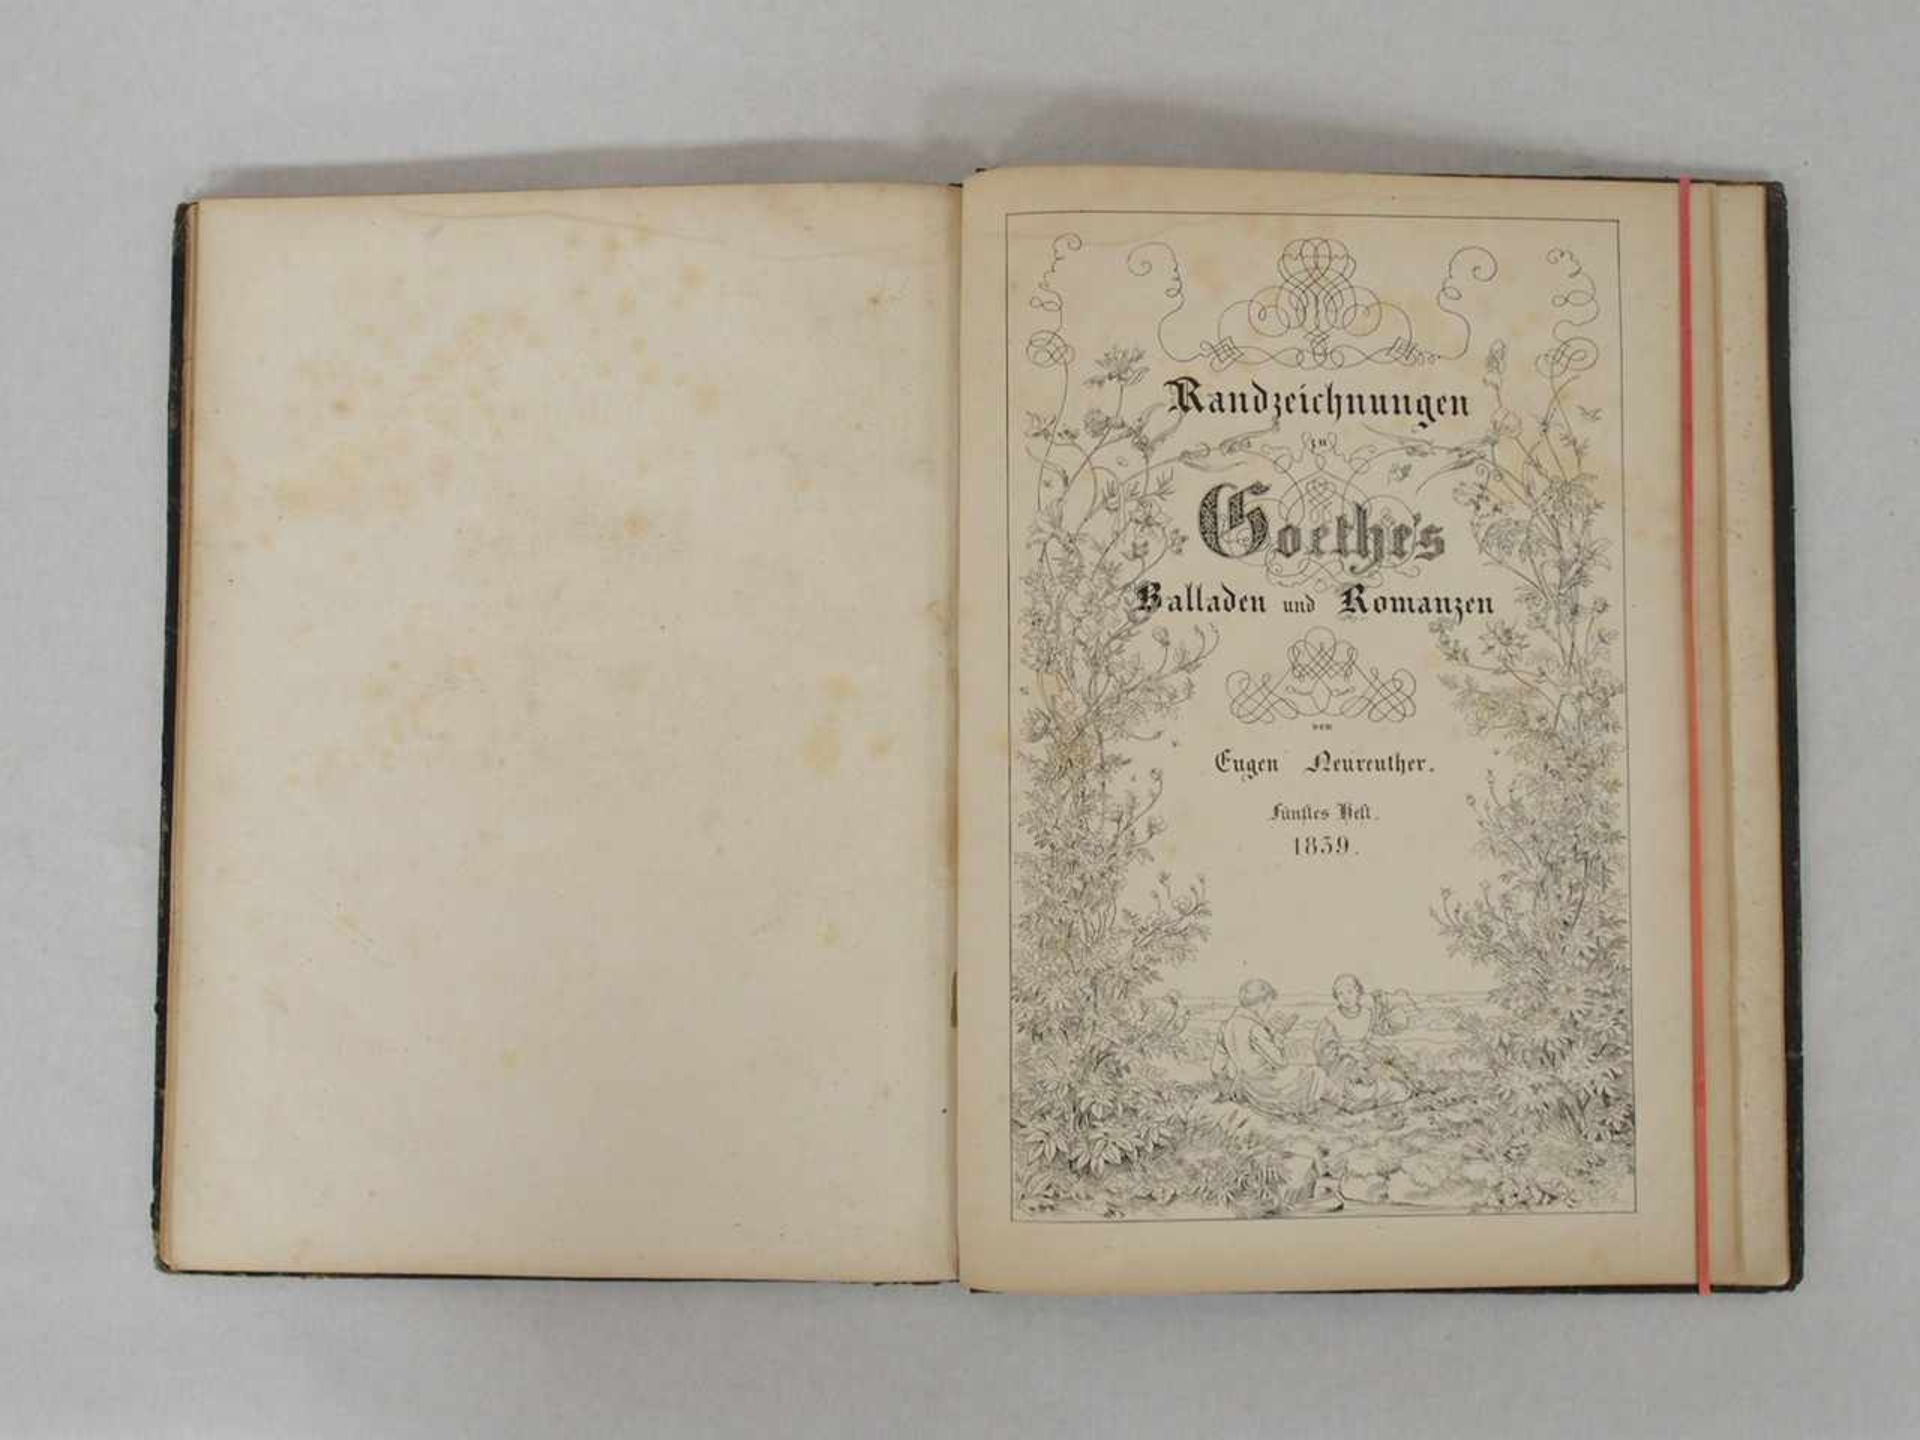 NEUREUTHER, EugenRandzeichnungen zu Goethes Balladen und Romanzen5 Hefte in einem Band, - Image 3 of 3